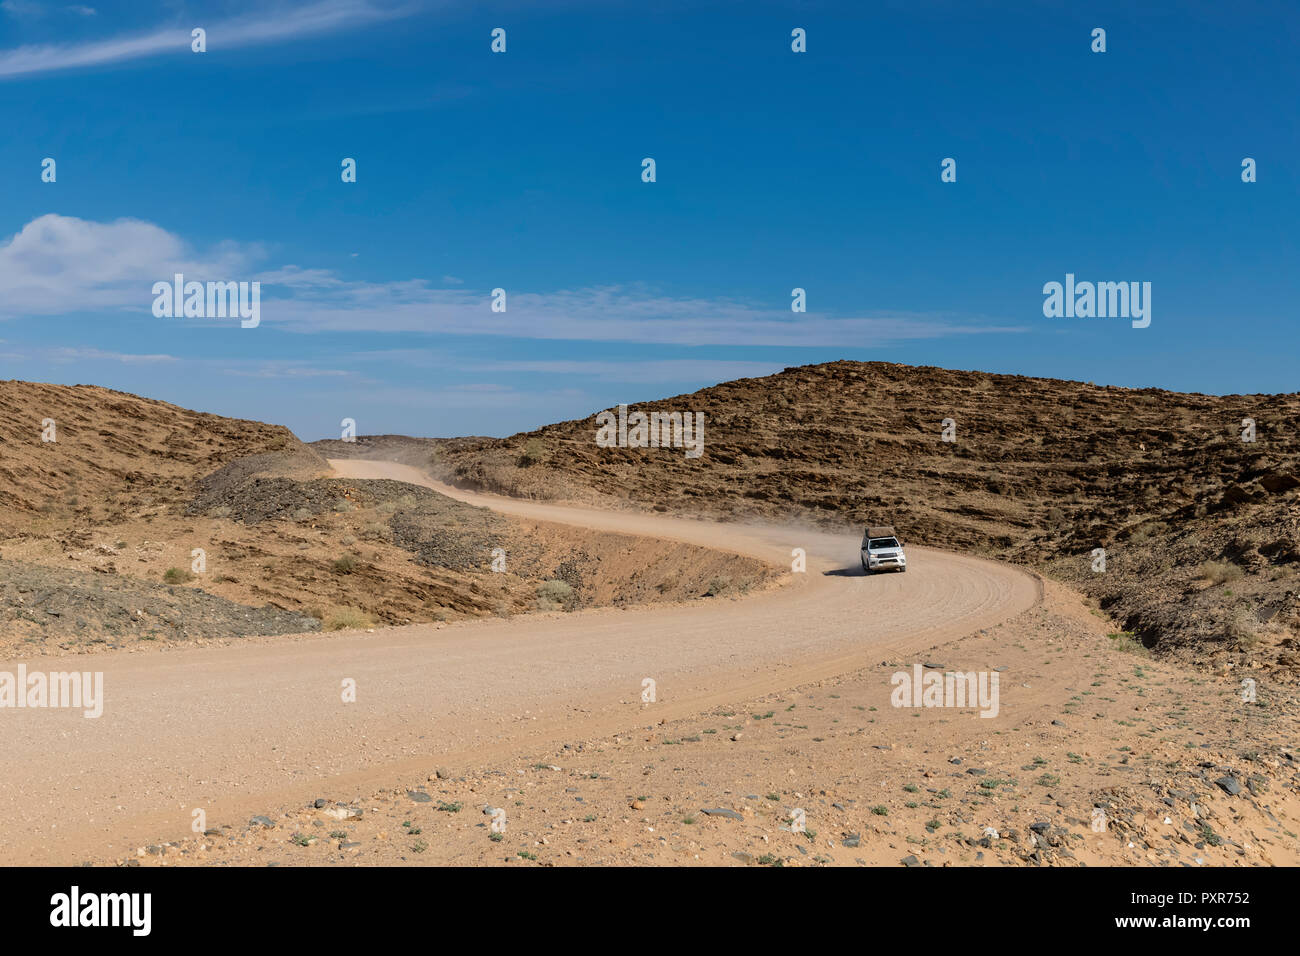 África, Namibia, el desierto de Namib Naukluft, Parque Nacional, vehículo off-road en ripio Foto de stock